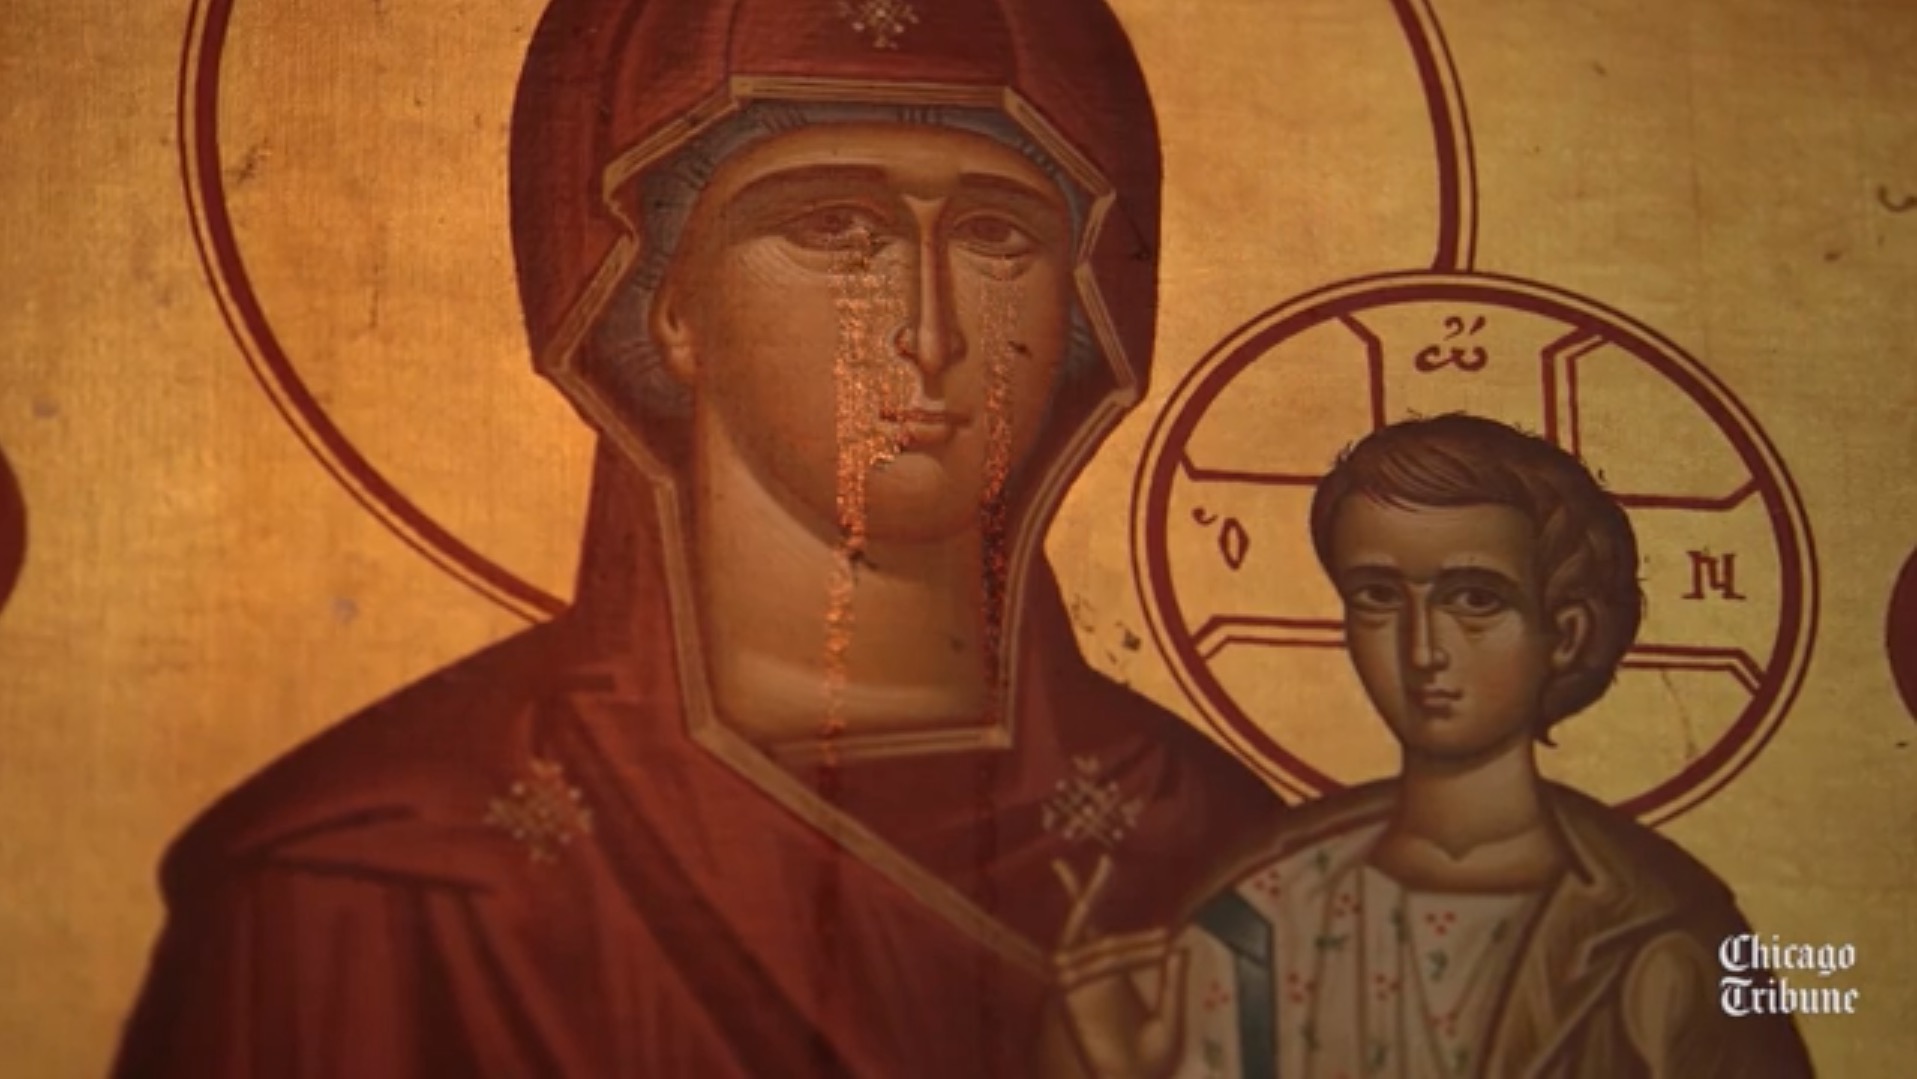 Des larmes sont apparues sur une icône de la mère de dieu dans une église grecque de chicago